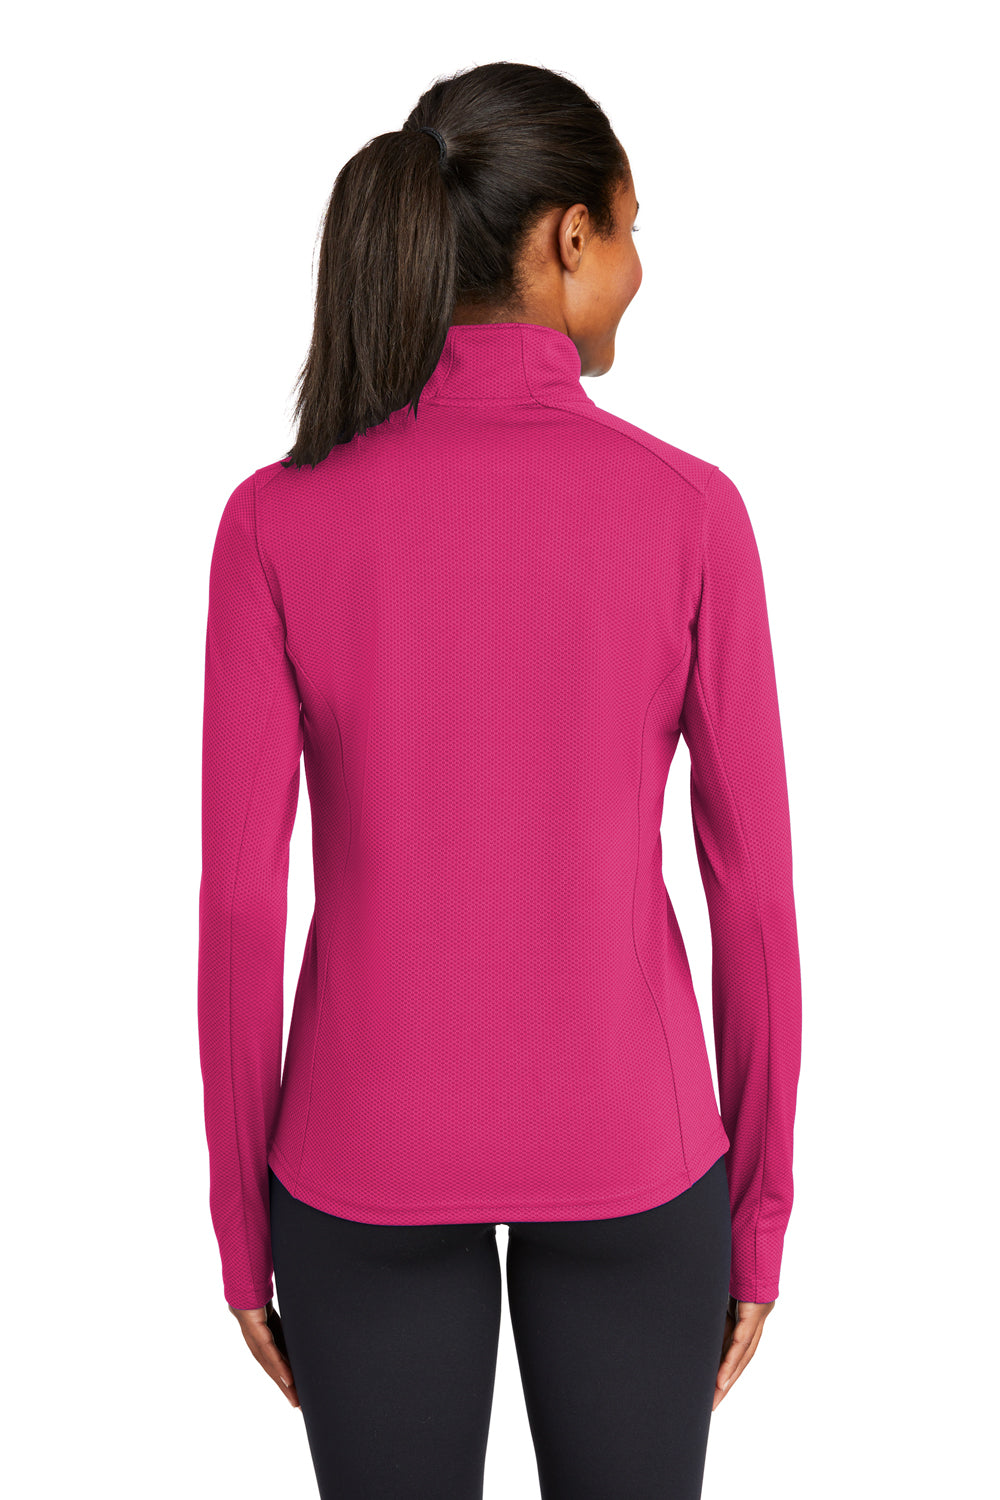 Sport-Tek LST860 Womens Sport-Wick Moisture Wicking 1/4 Zip Sweatshirt Fuchsia Pink Back